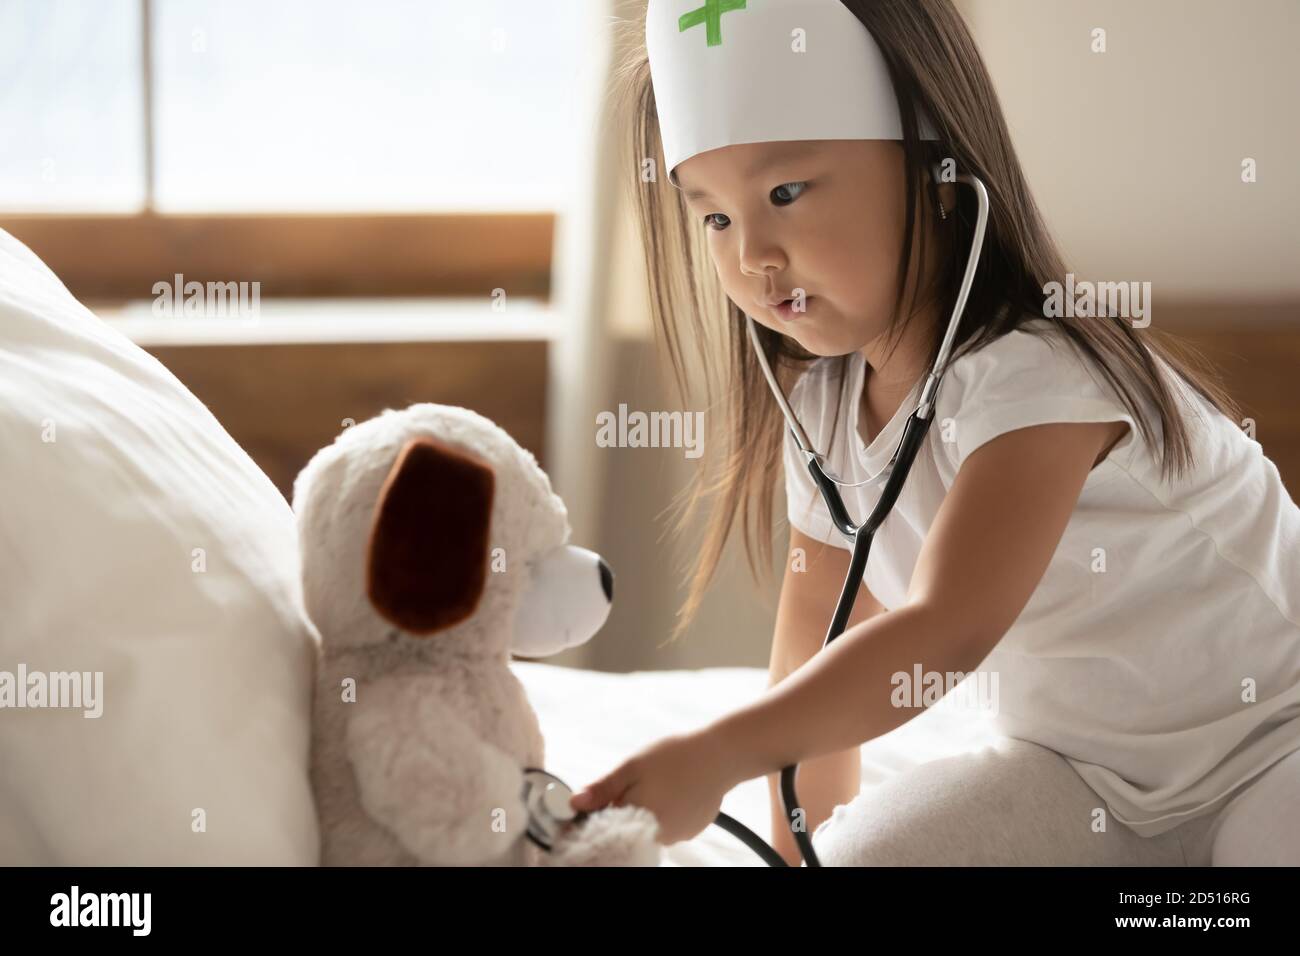 Primo piano ragazza asiatica che indossa uniforme medico utilizzando stetoscopio Foto Stock